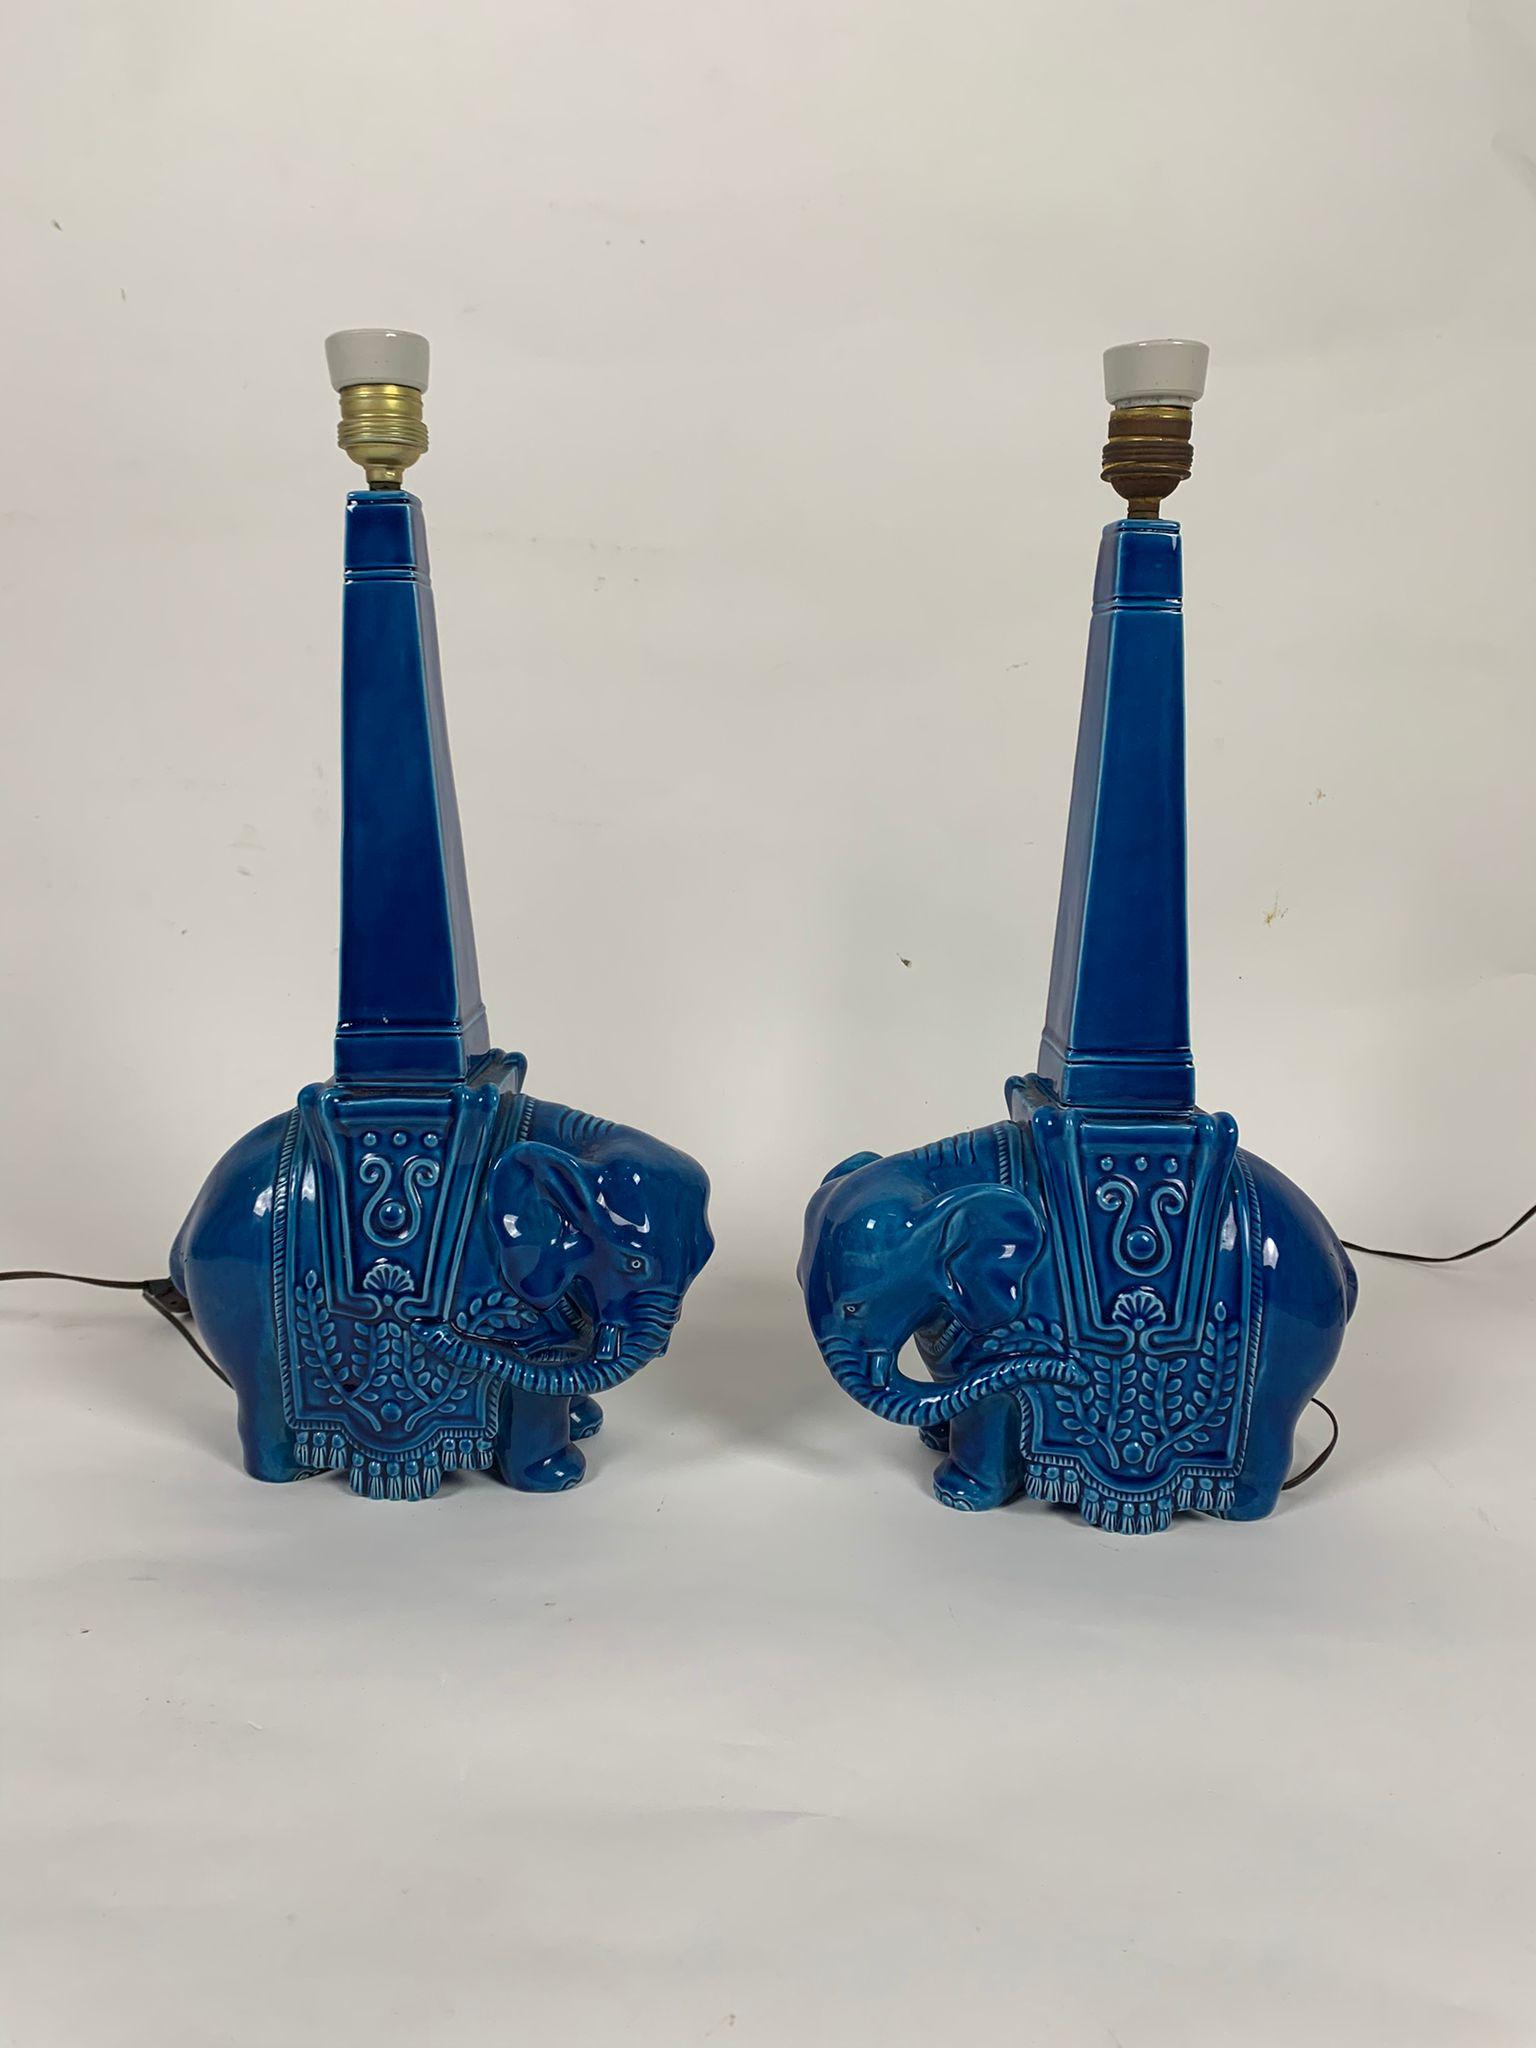 Paire de lampes de table en céramique bleue représentant des éléphants, Italie, années 1960

Paire de lampes en céramique de fabrication italienne des années 1960 représentant deux éléphants. 
Très bon état des bases en céramique.

Dimensions 120 x